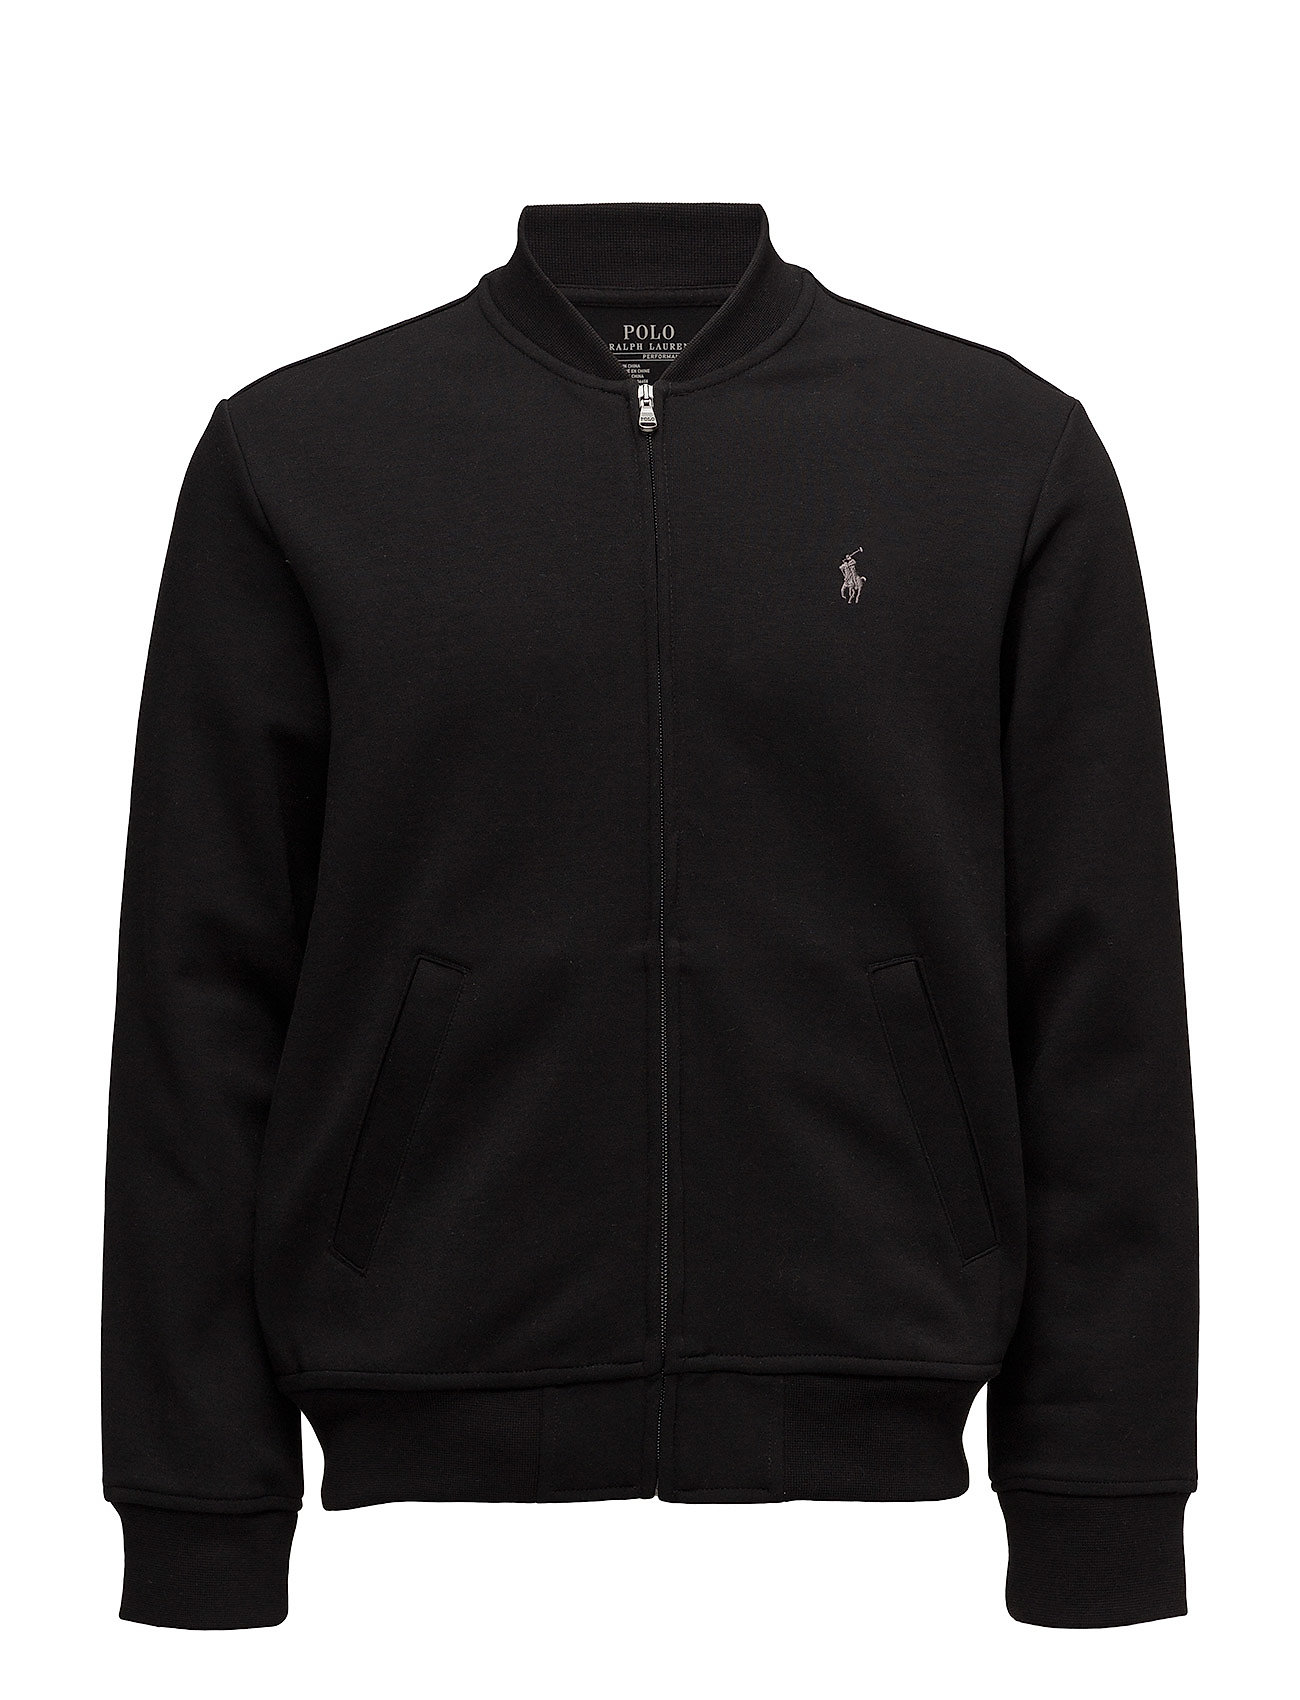 Polo Black Jacket | Varsity Apparel Jackets